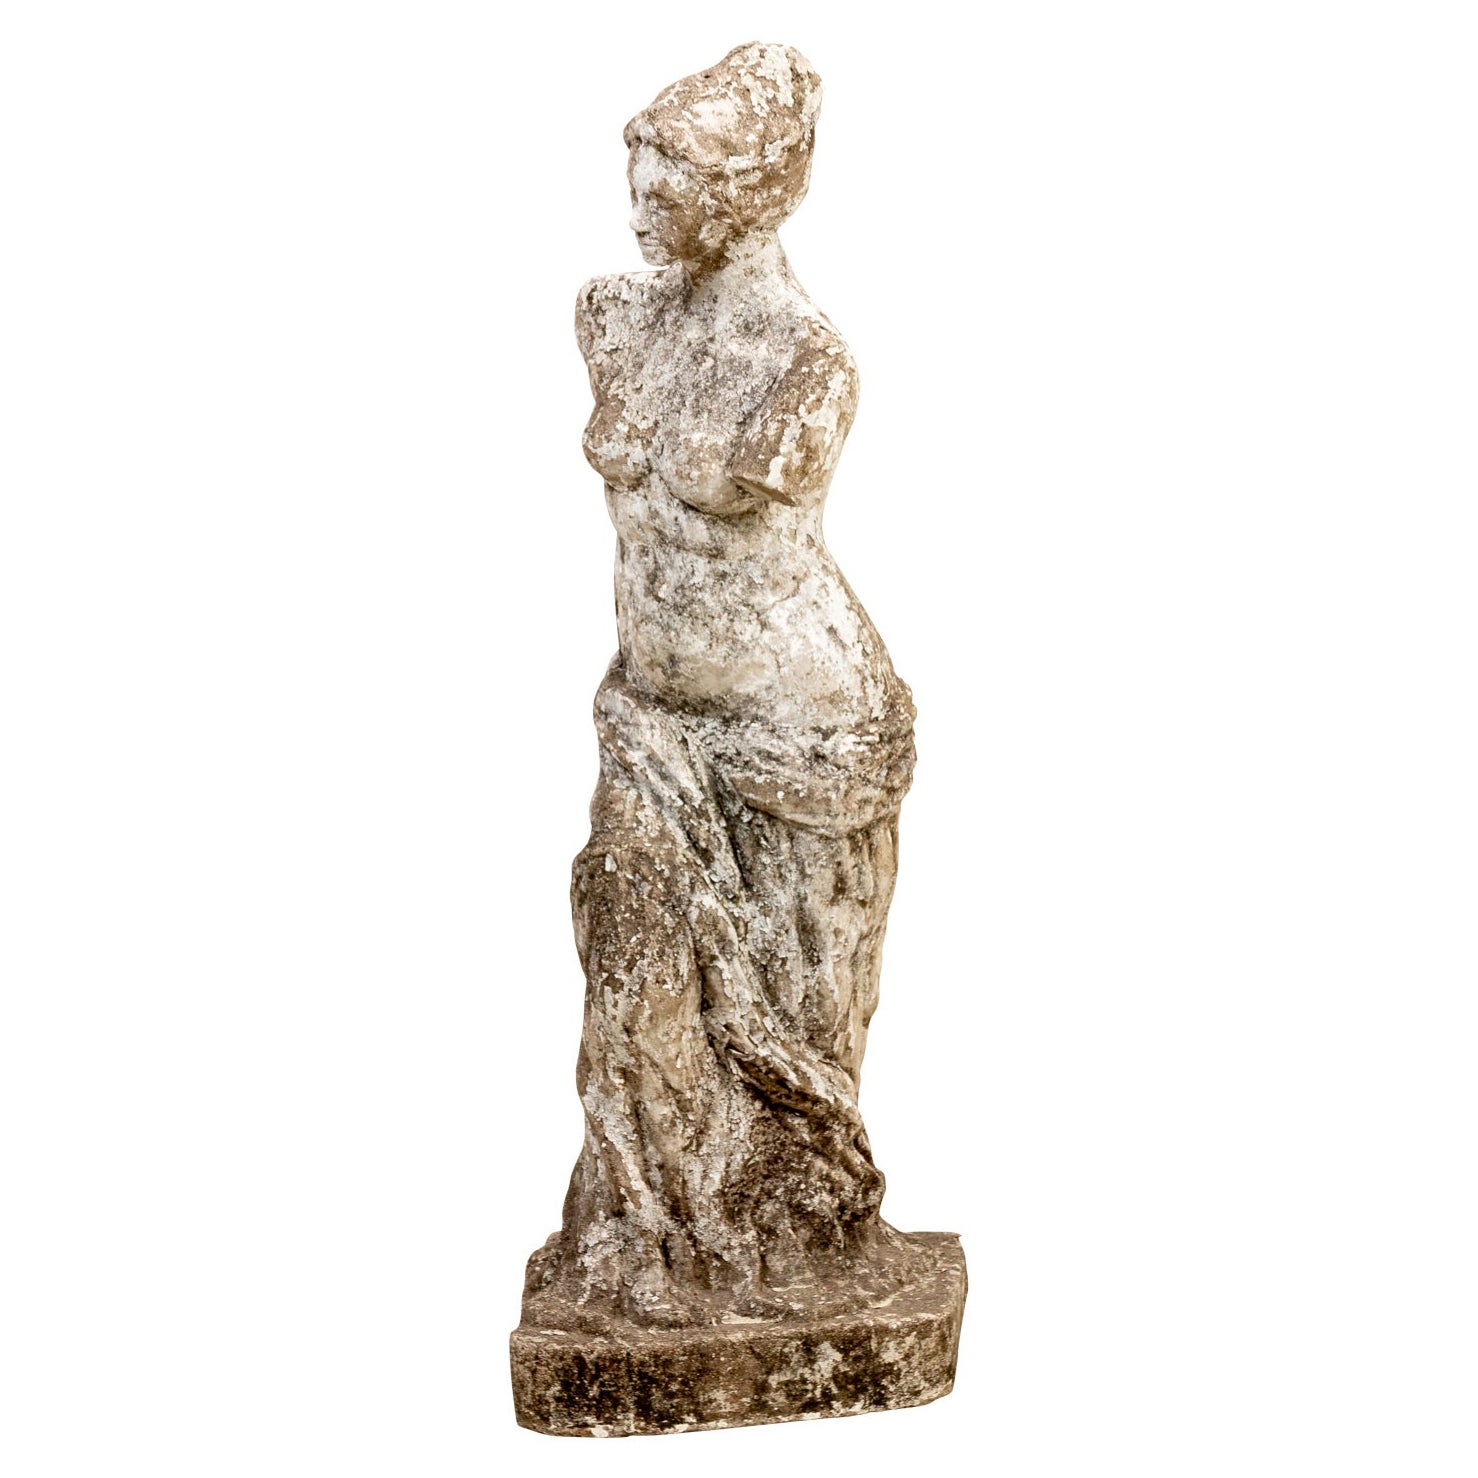 Cast Stone Garden Statue of Semi Nude Robed Figure